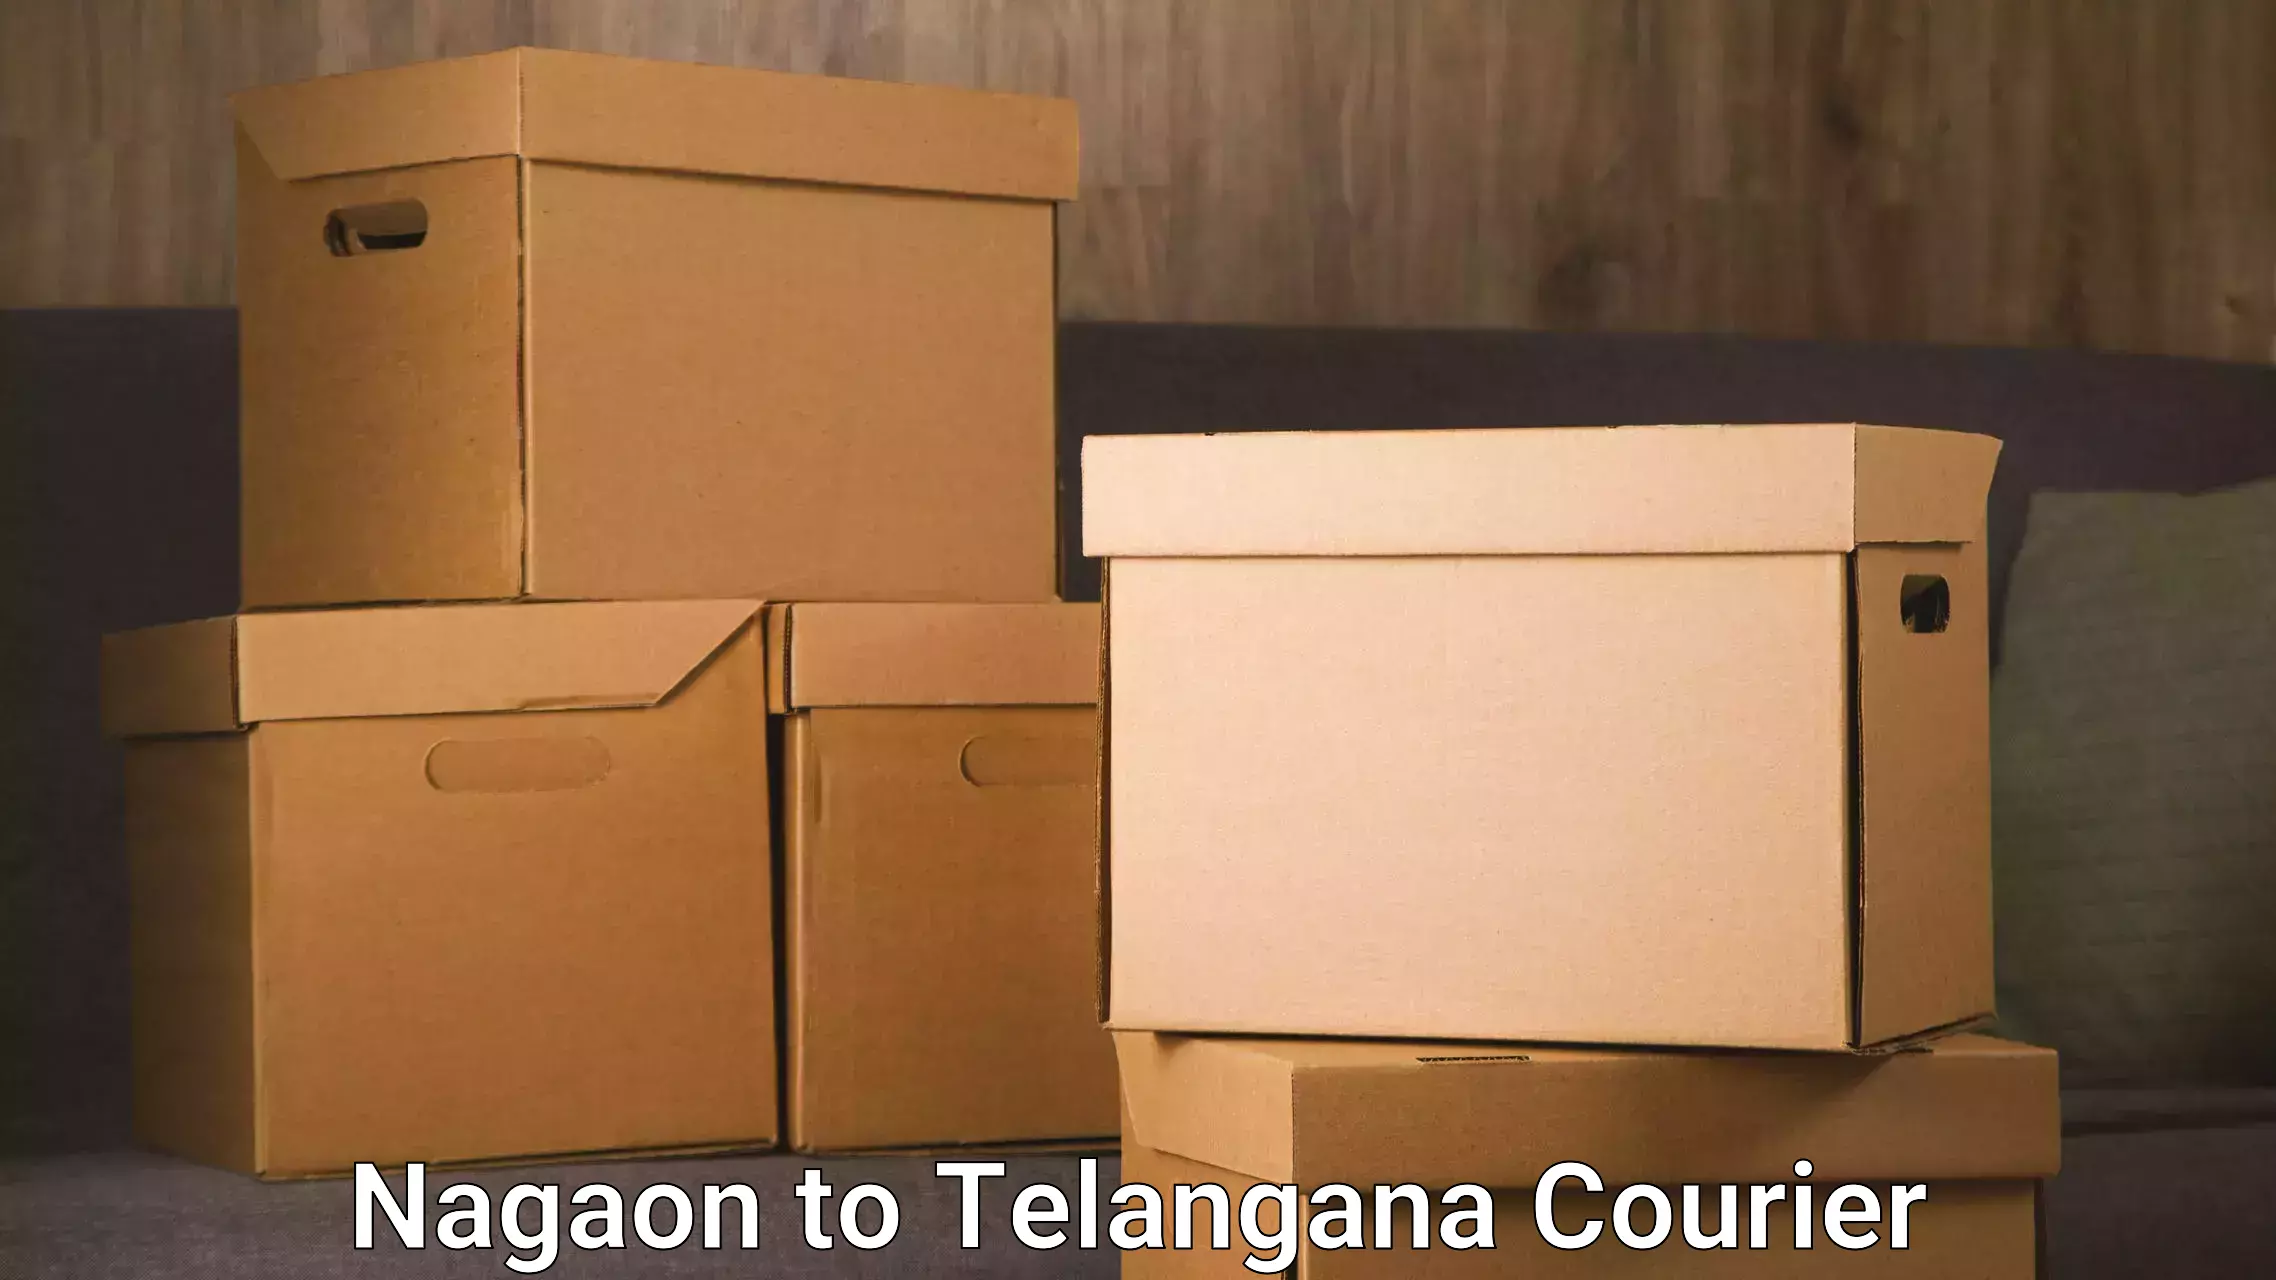 24-hour delivery options Nagaon to Mudigonda